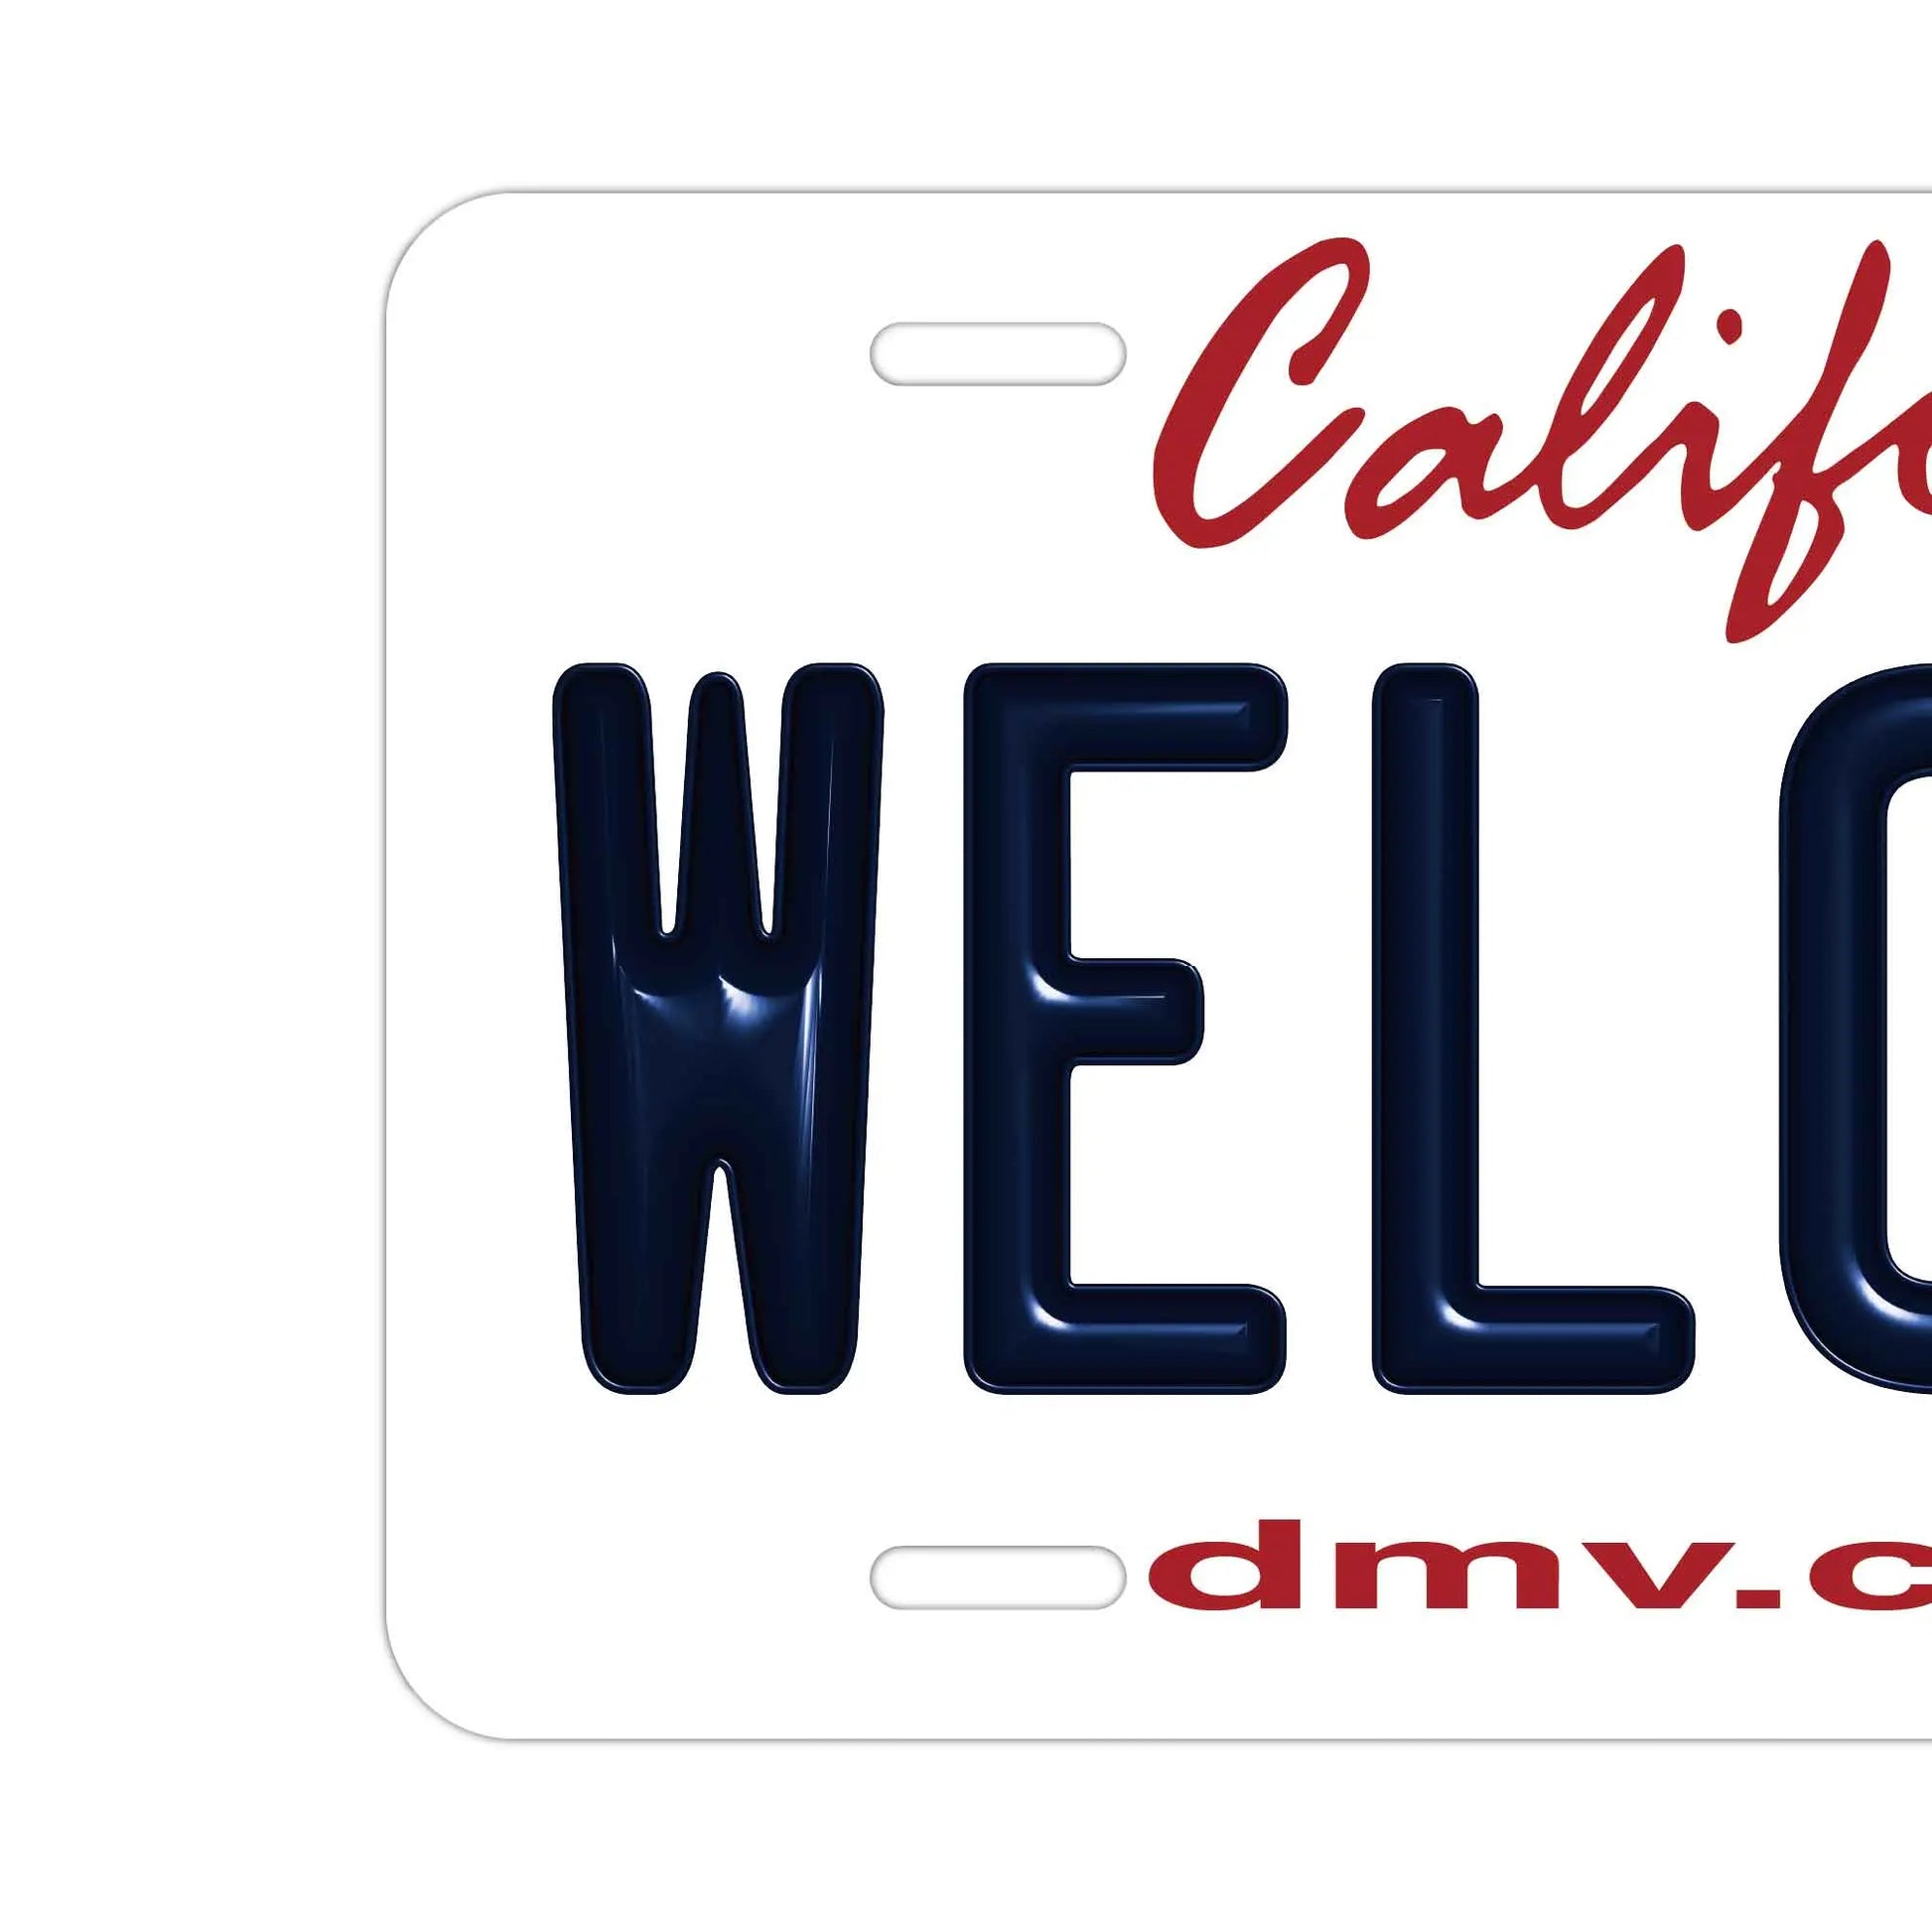 【ウェルカムボード看板】カリフォルニア州2010年代・アメリカライセンスプレート型サイン PL8HERO